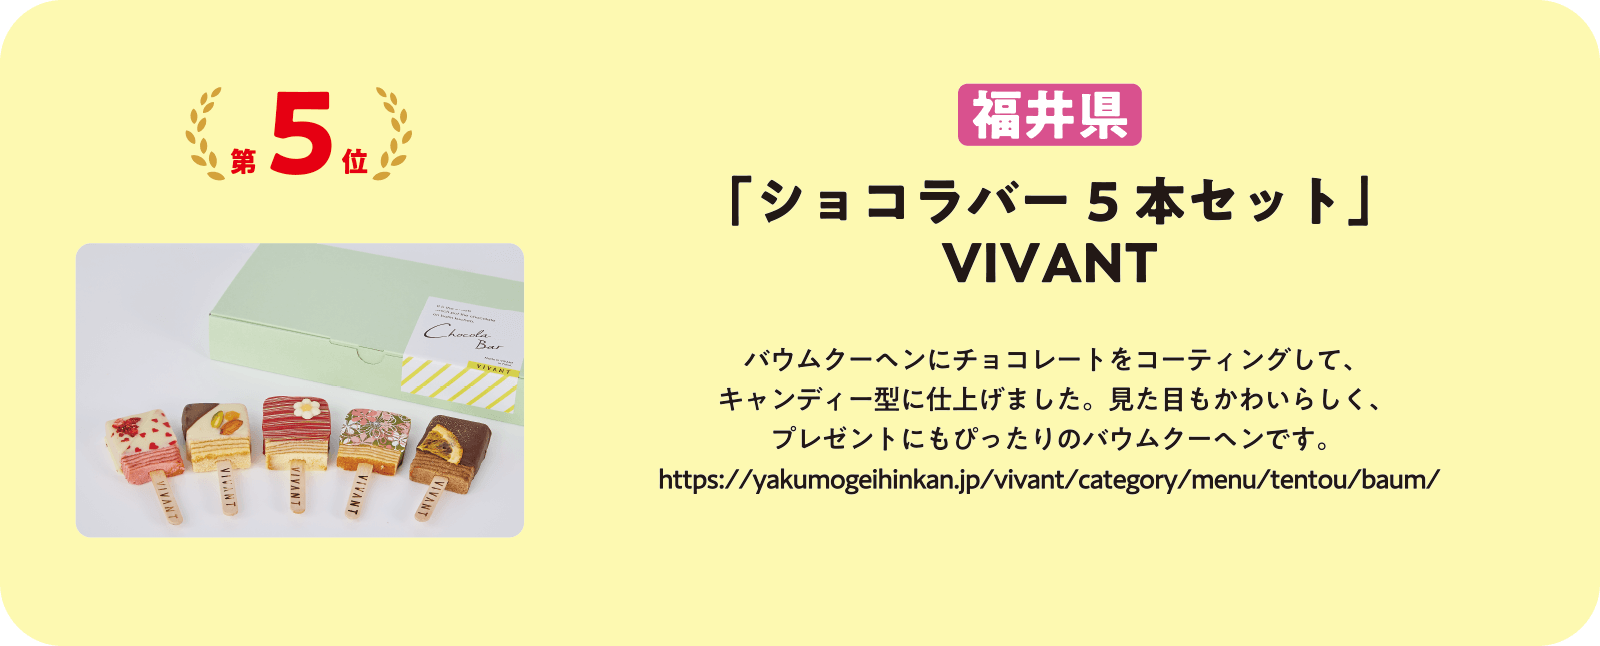 「ショコラバー5本セット」 VIVANT